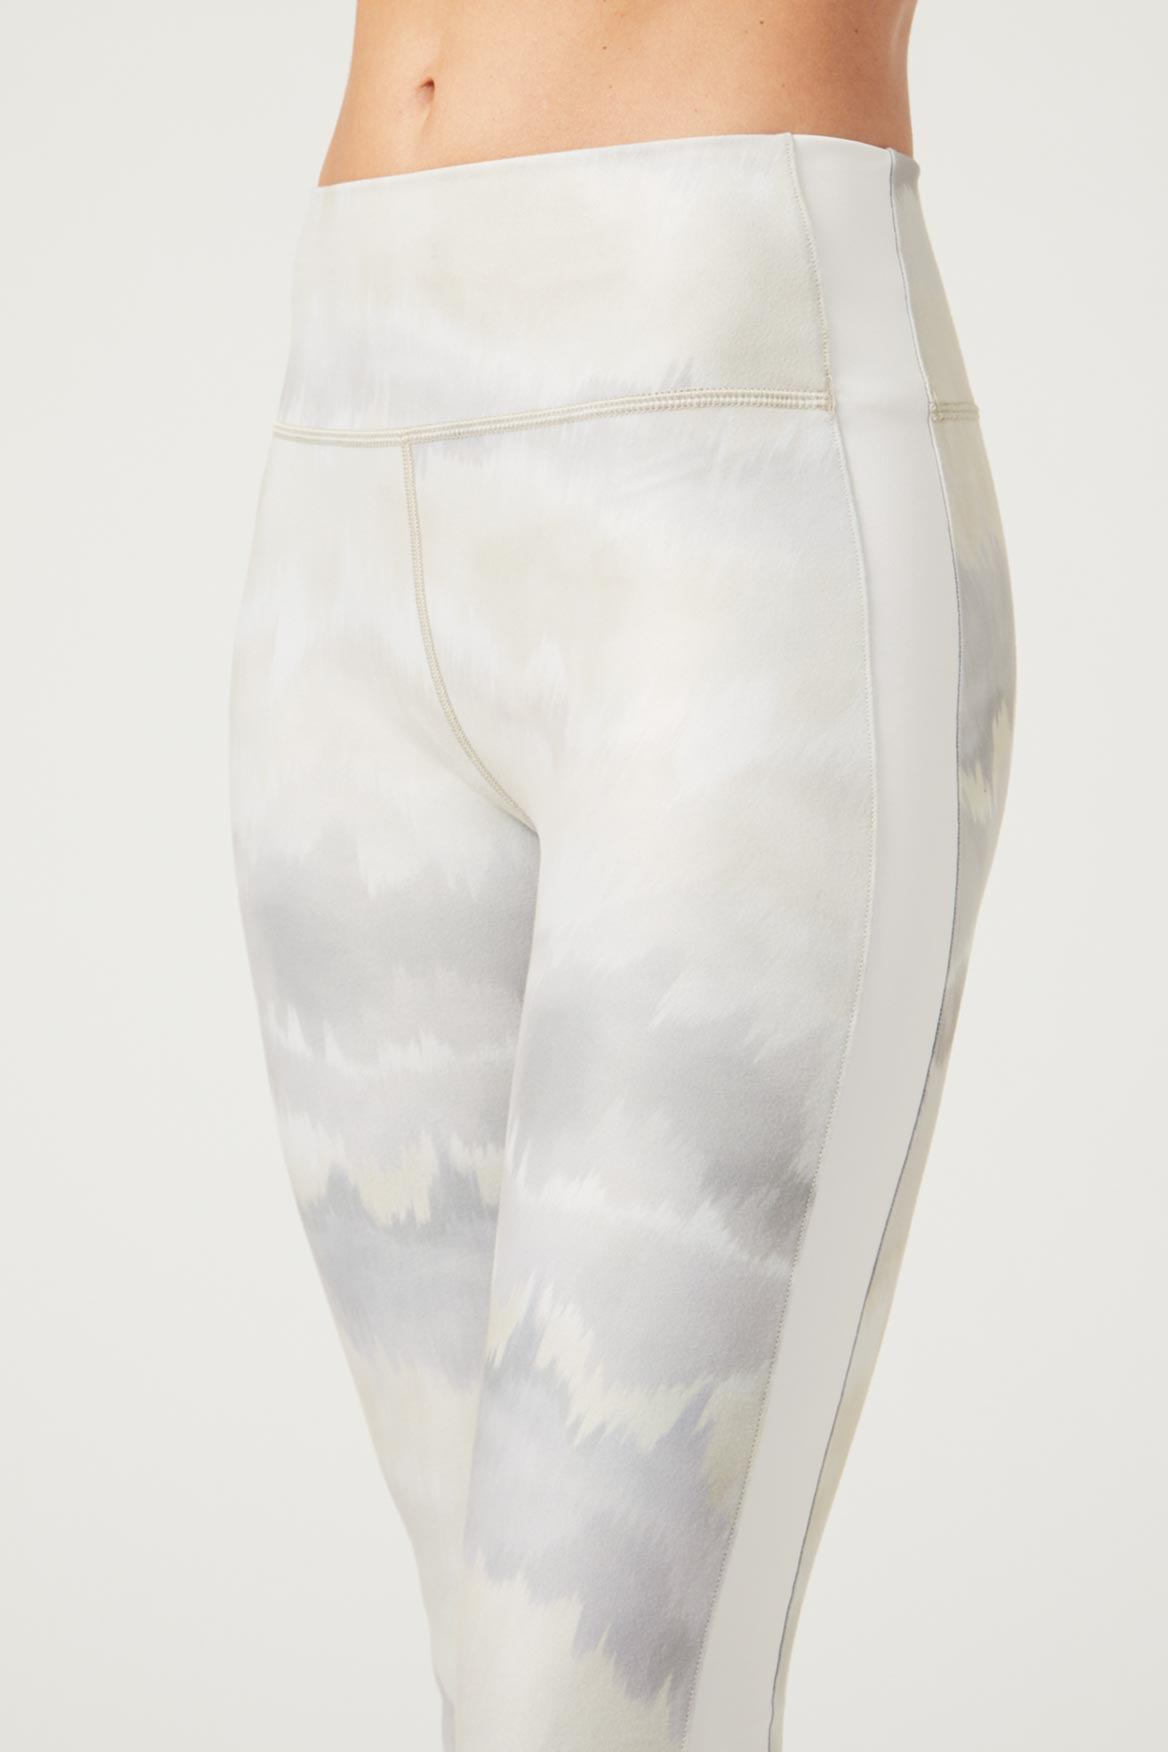 Harper Legging Sahara White – lovethissale